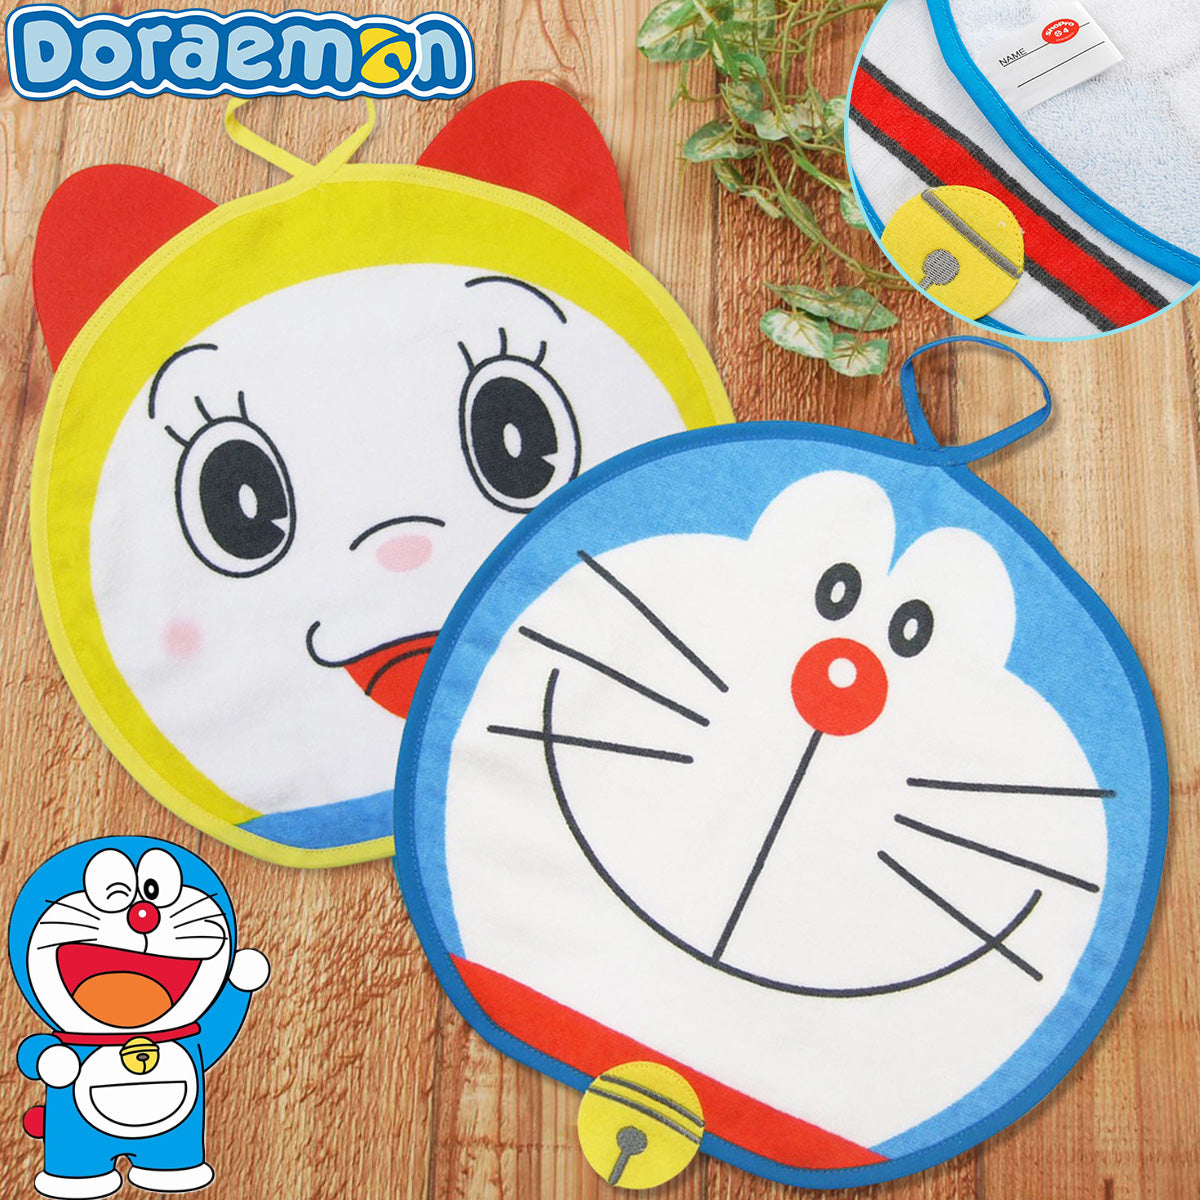 Hand Towel - Japan Doraemon & Dorami